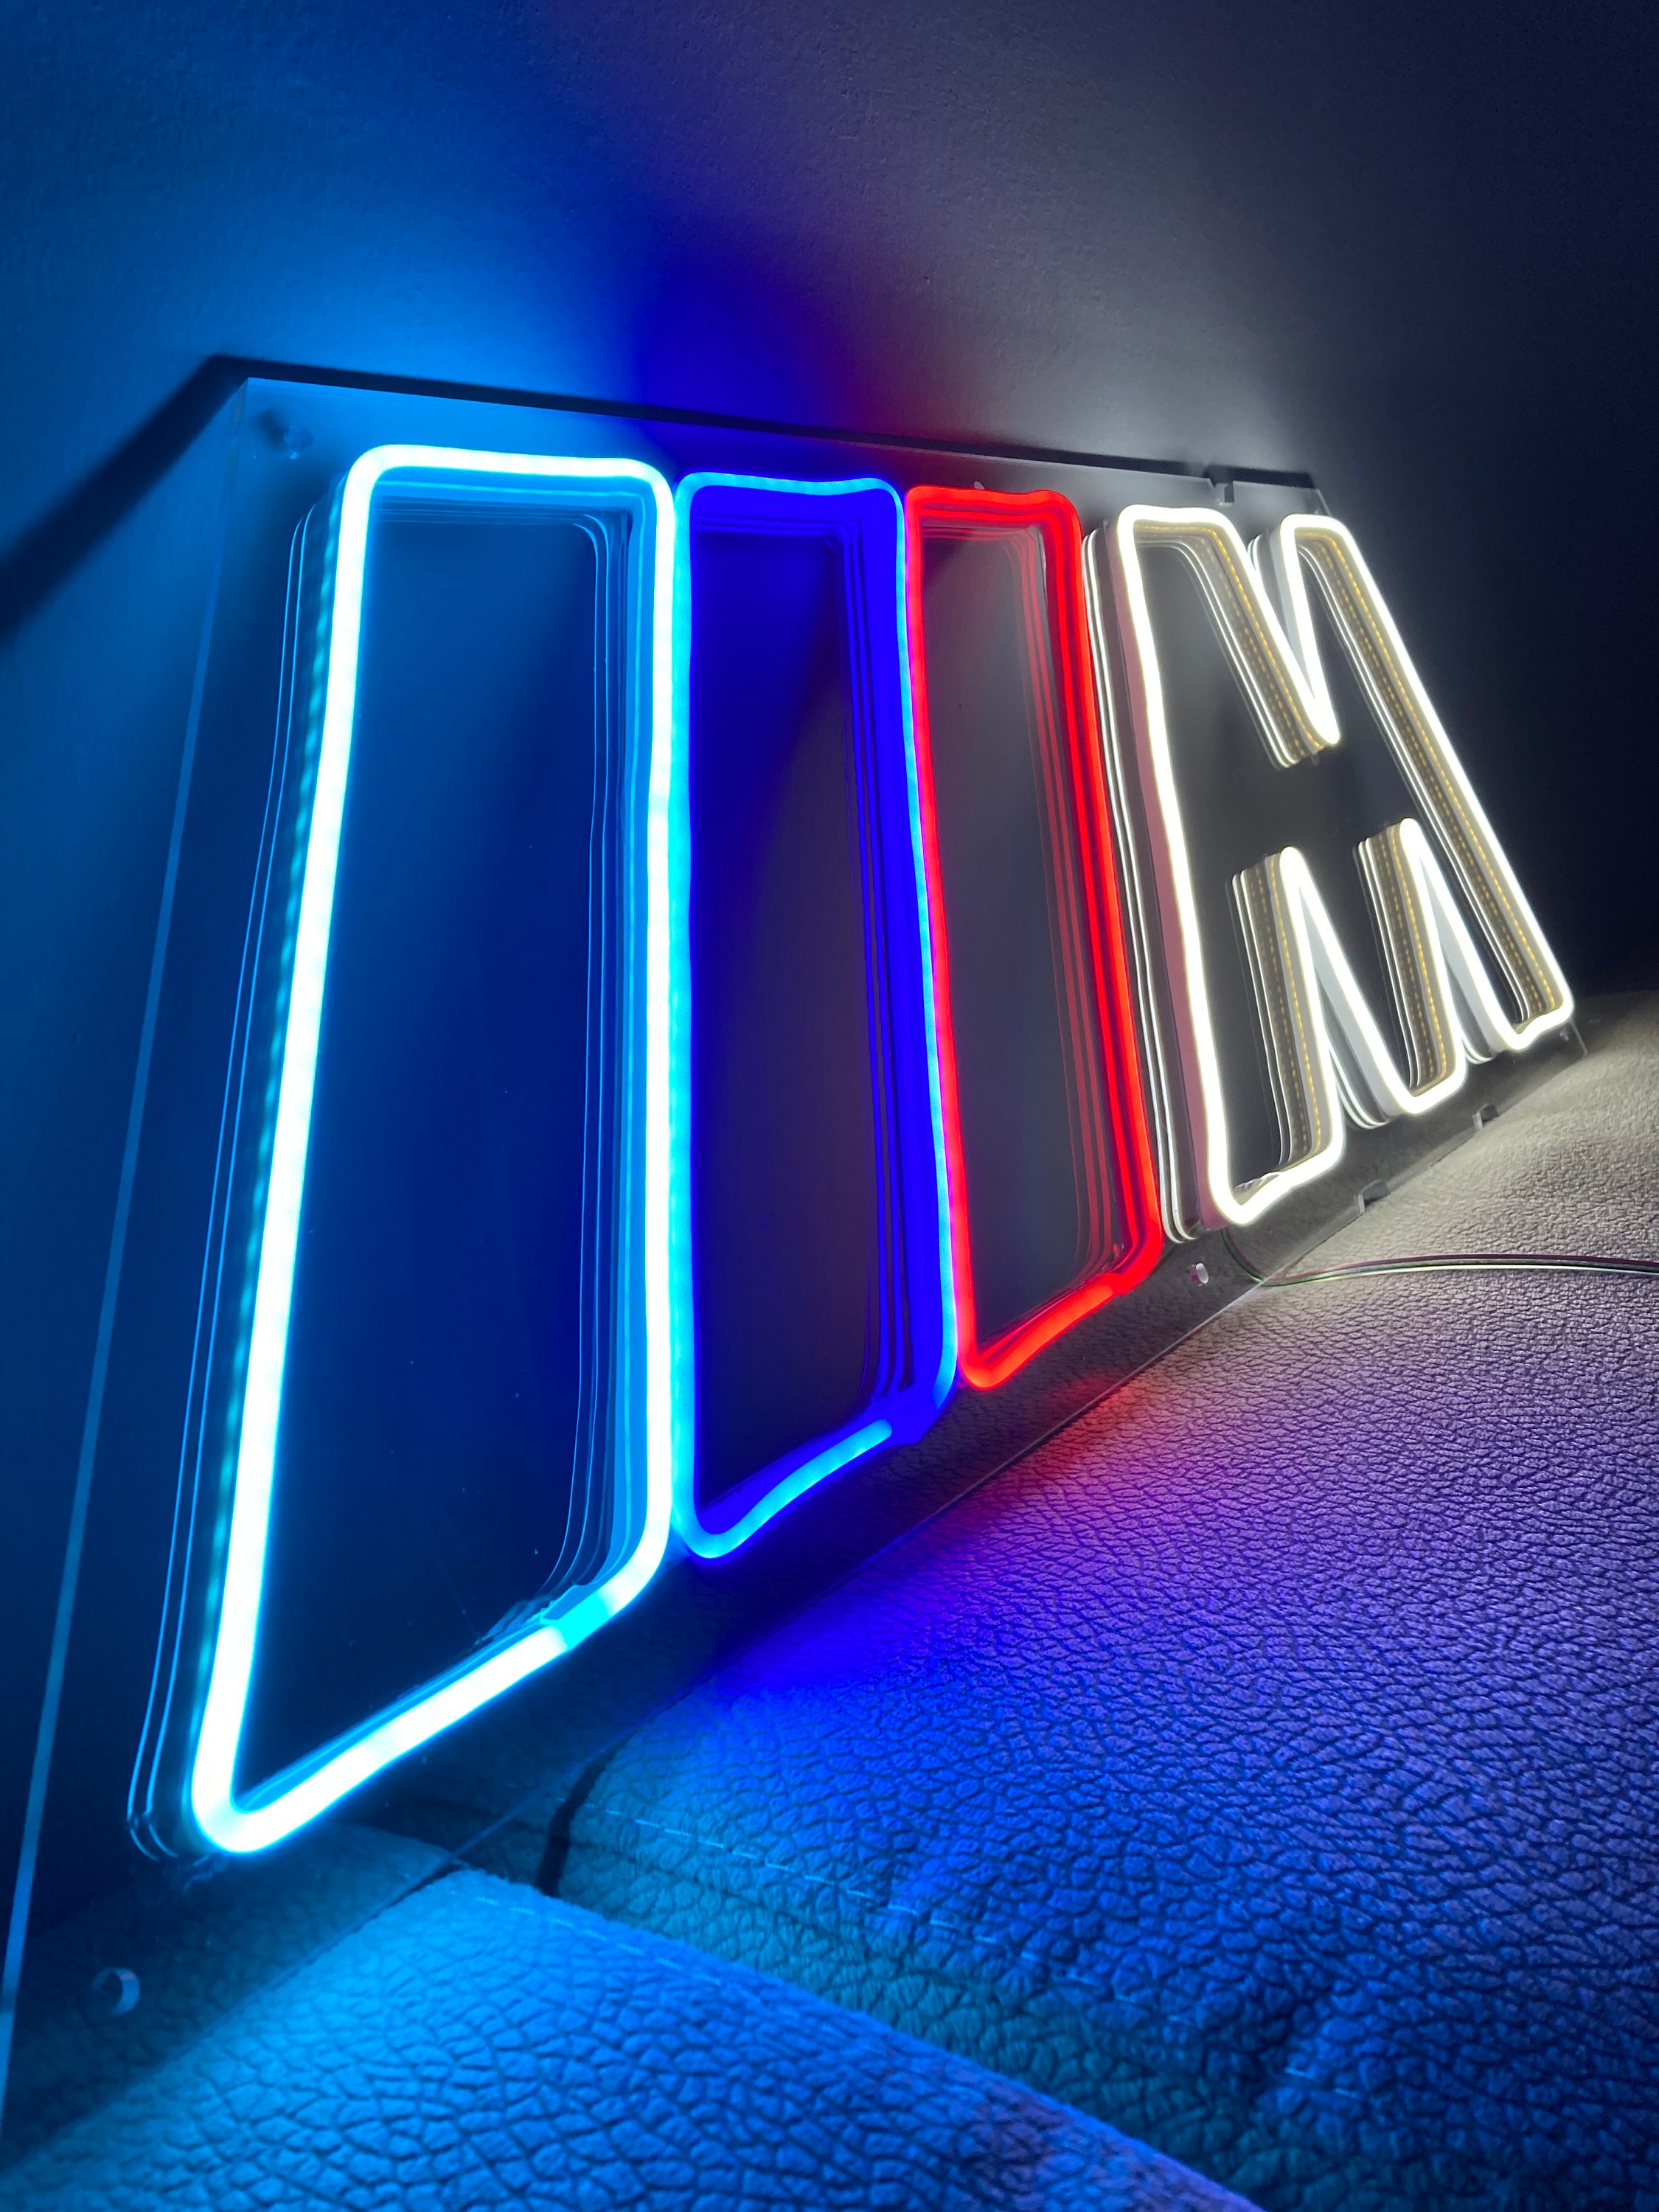 BMW M Power | Enseigne Néon LED I Décoration murale personnalisable